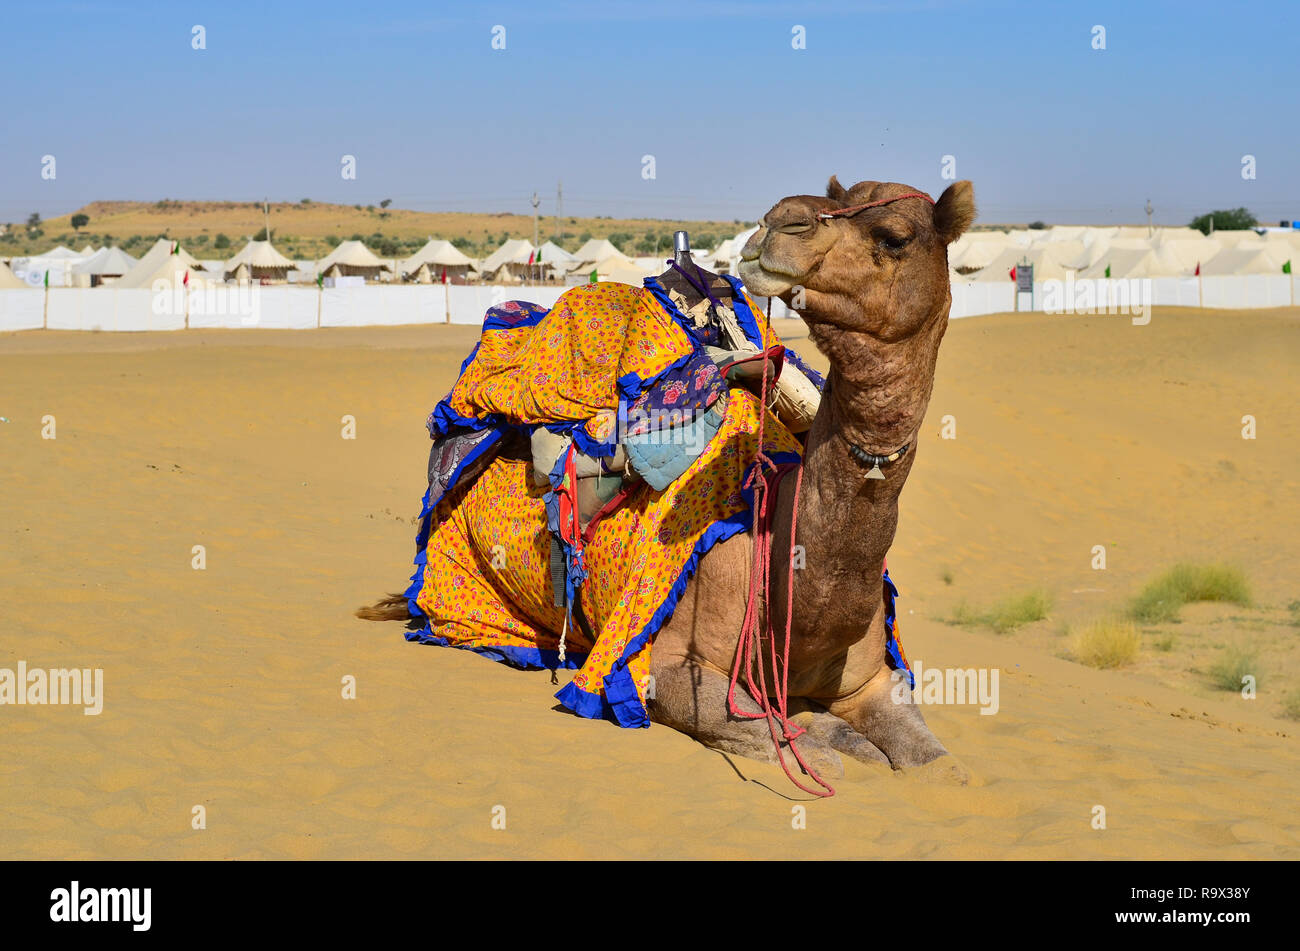 Décorées avec Camel clothes sitting, lazying, de mâcher de la nourriture en attendant les touristes dans un Sam dunes de sable, désert de Thar, Jaisalmer, Rajasthan Banque D'Images